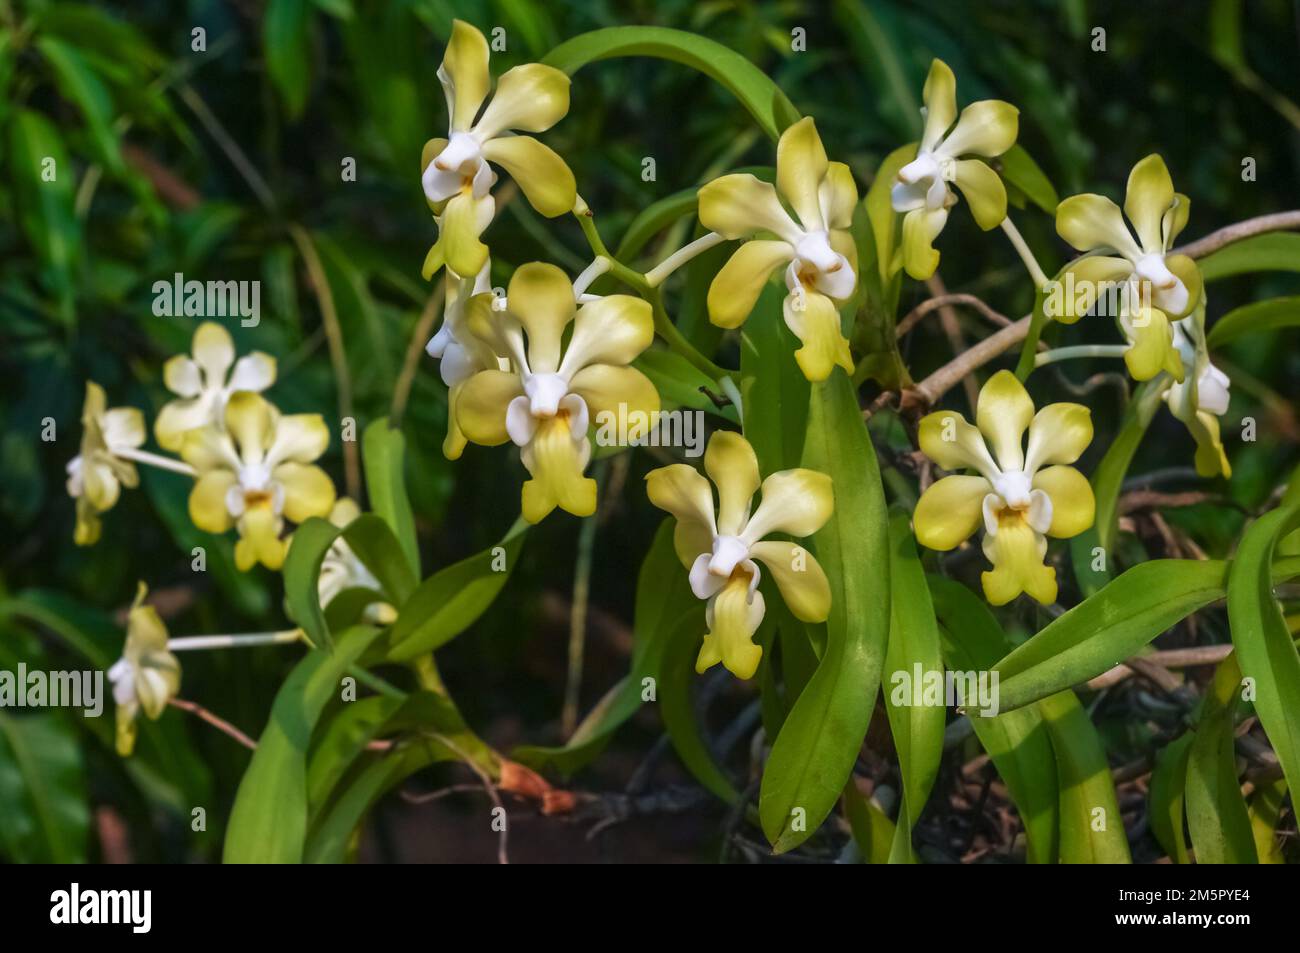 Gros plan sur les fleurs jaune et blanc vif de l'espèce épiphytique d'orchidées vanda denisoniana qui fleurit à l'extérieur sur fond naturel Banque D'Images